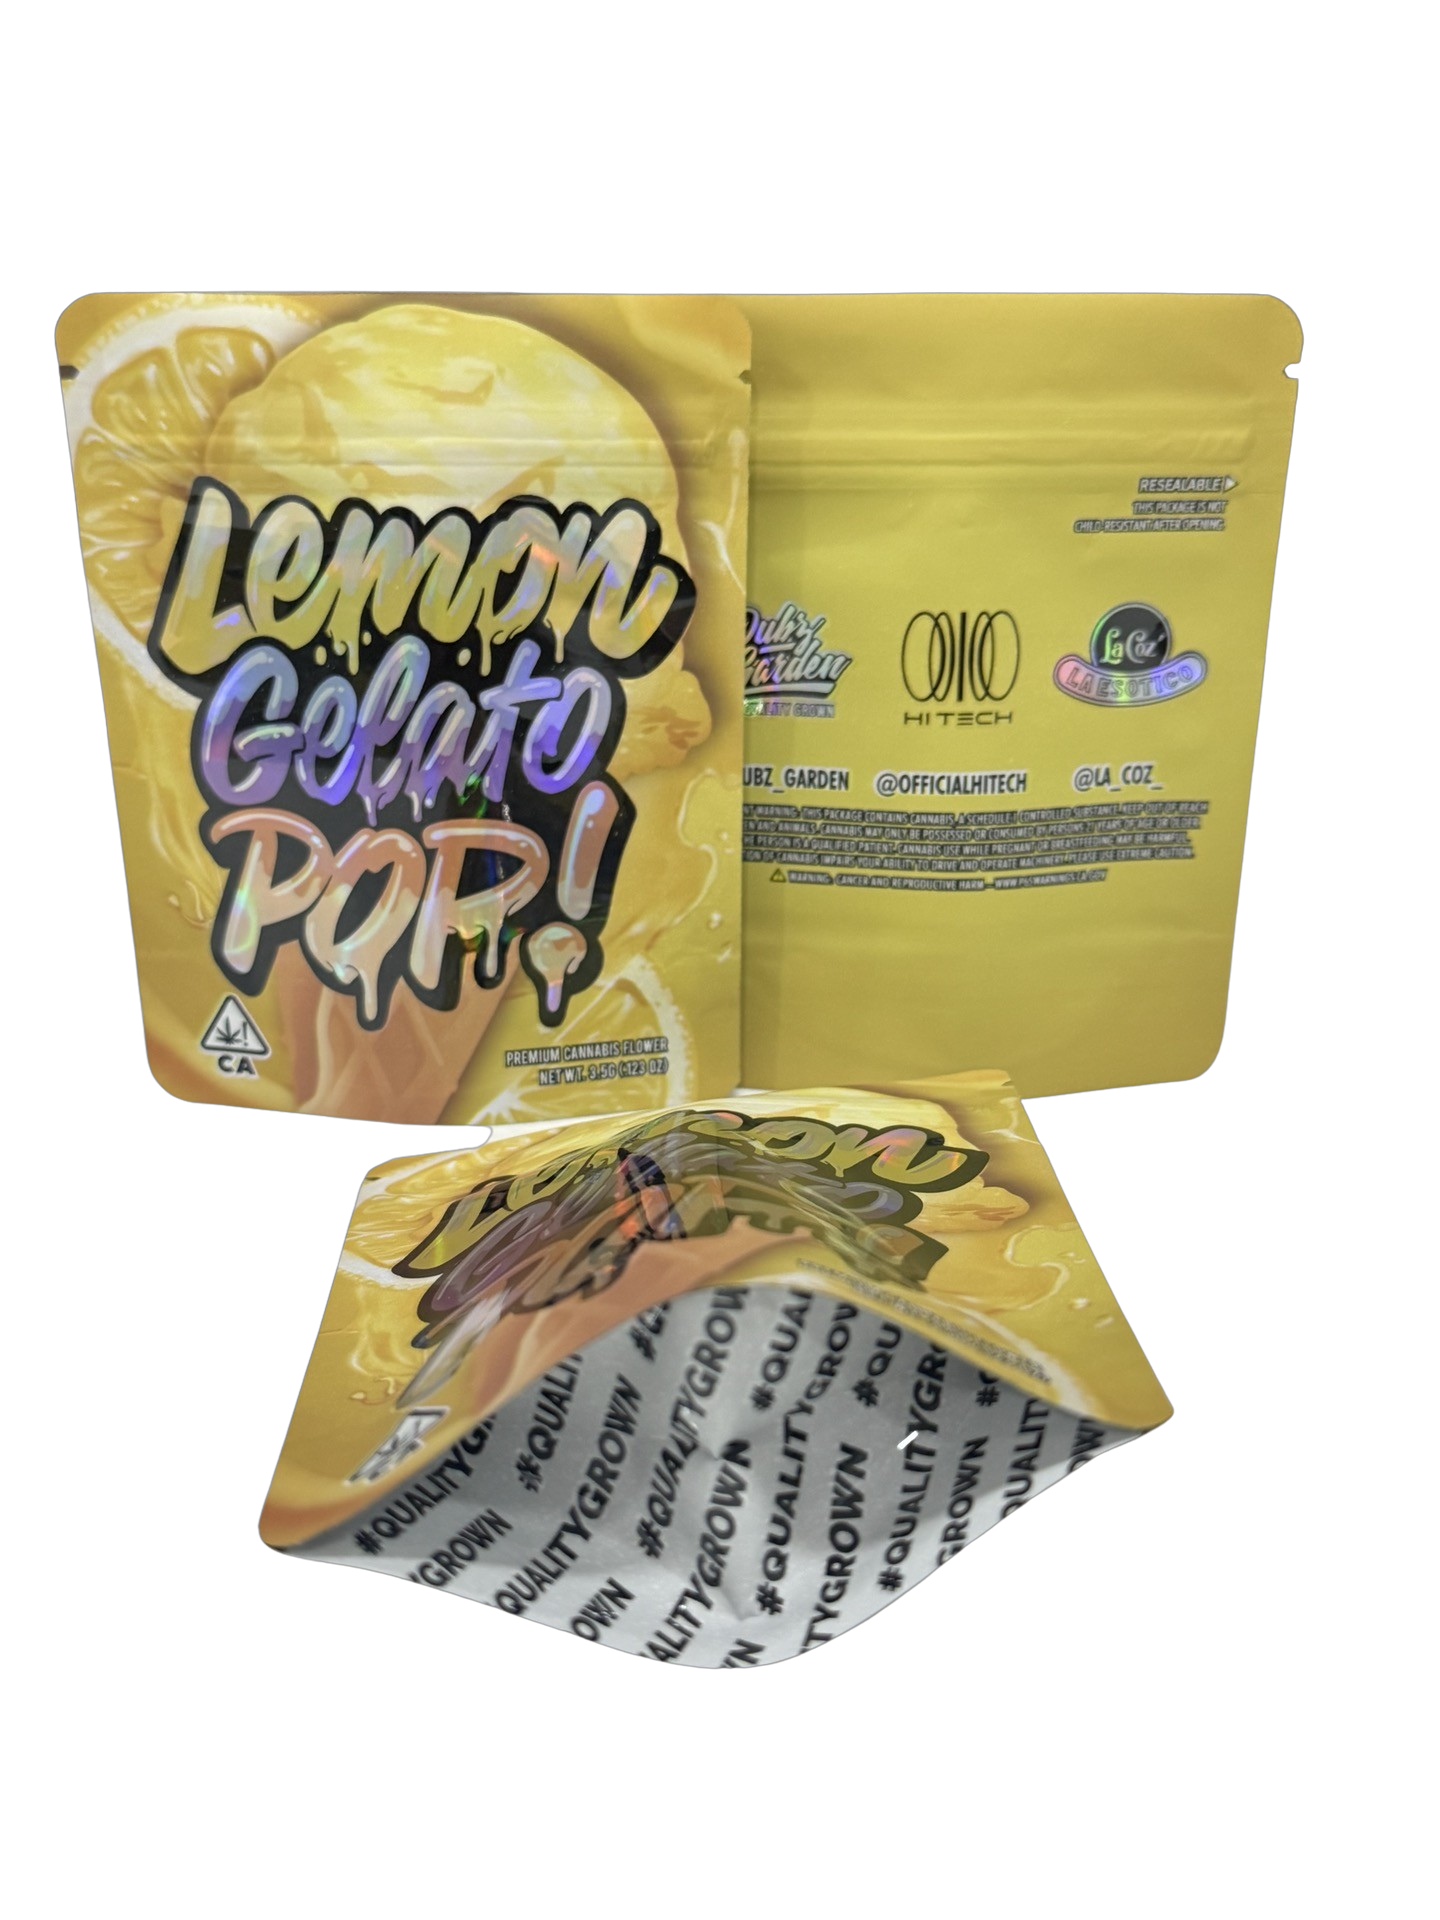 Lemon Gelato Pop Mylar Bags 3.5g Dubz Garden